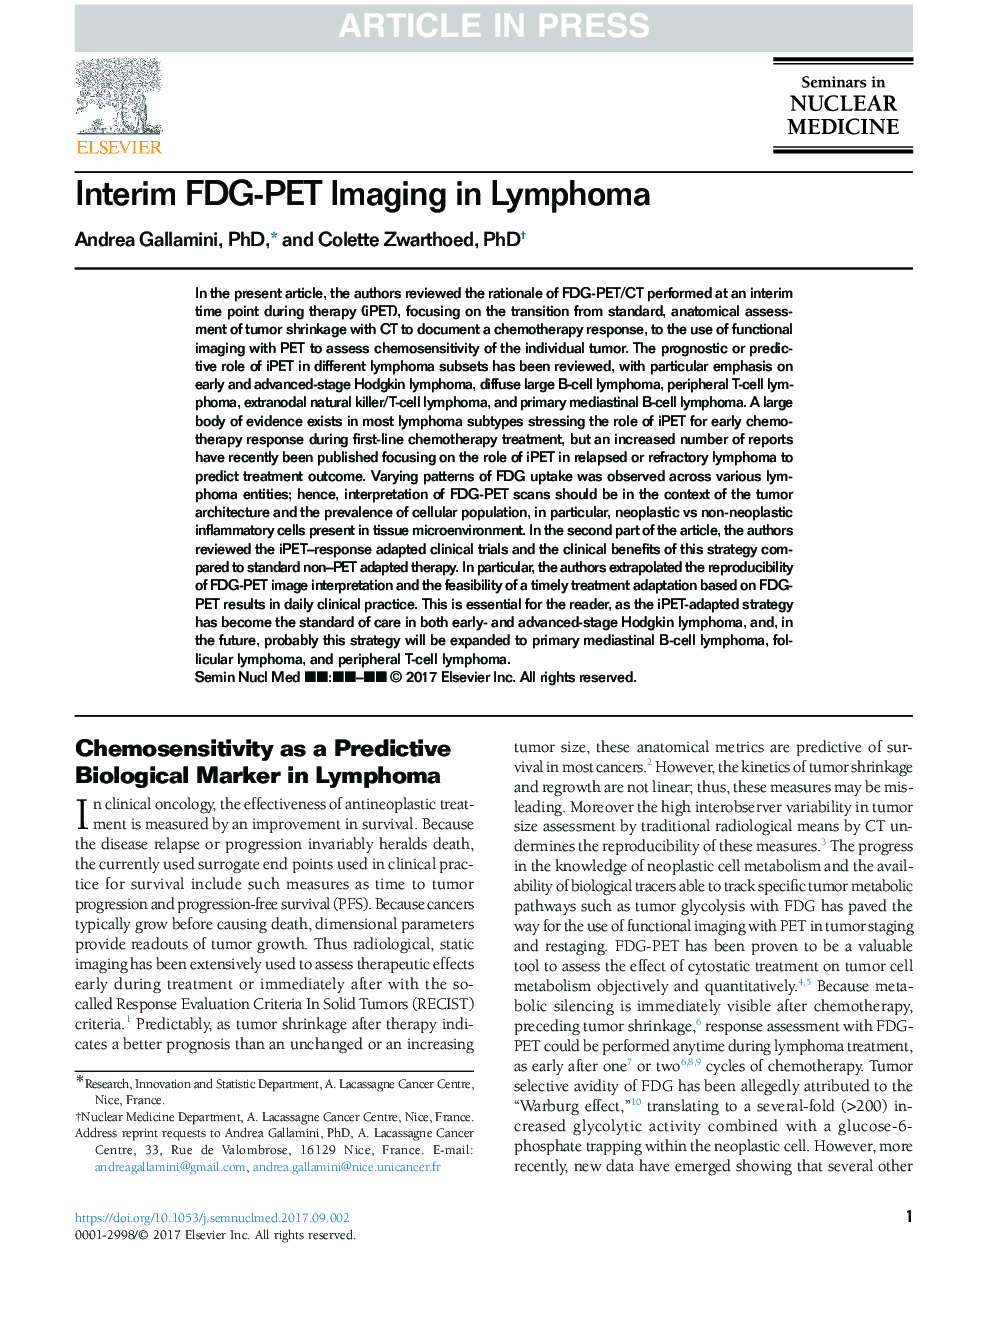 Interim FDG-PET Imaging in Lymphoma